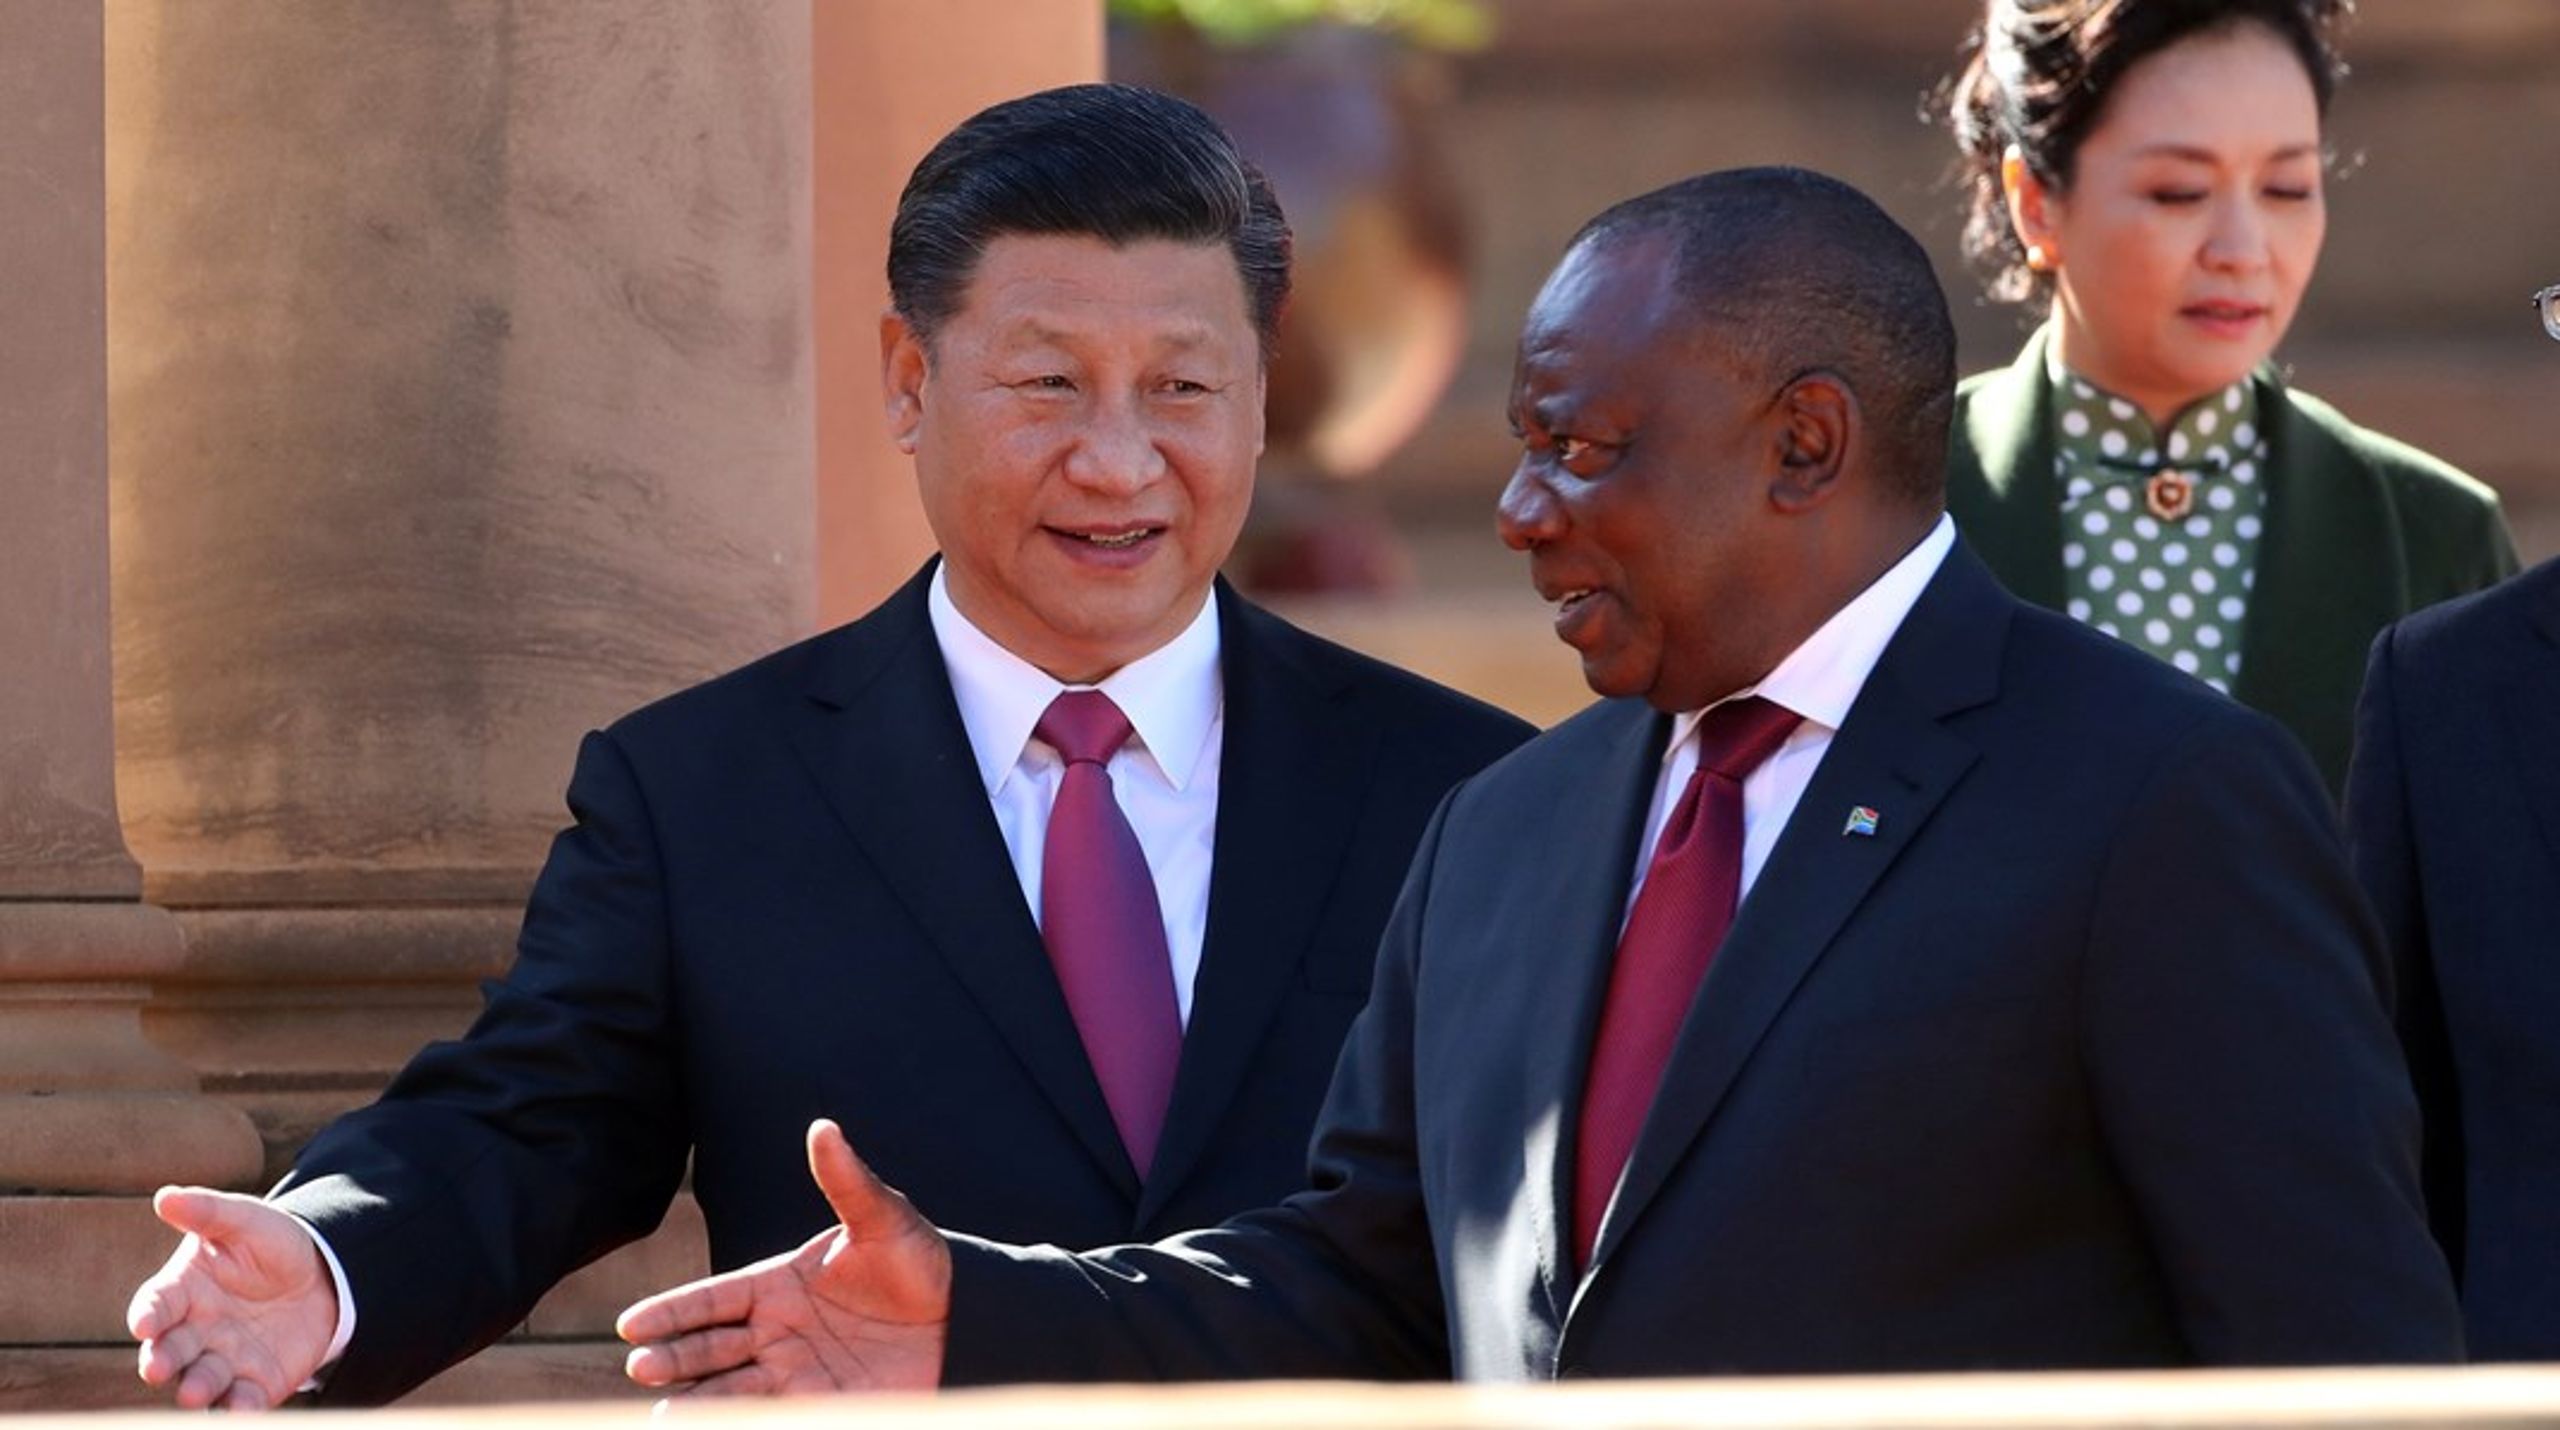 Kinas engagement i Afrika er naturligvis også drevet af ønsket om at servicere egne interesser, skriver&nbsp;Jørgen Delman.<br>